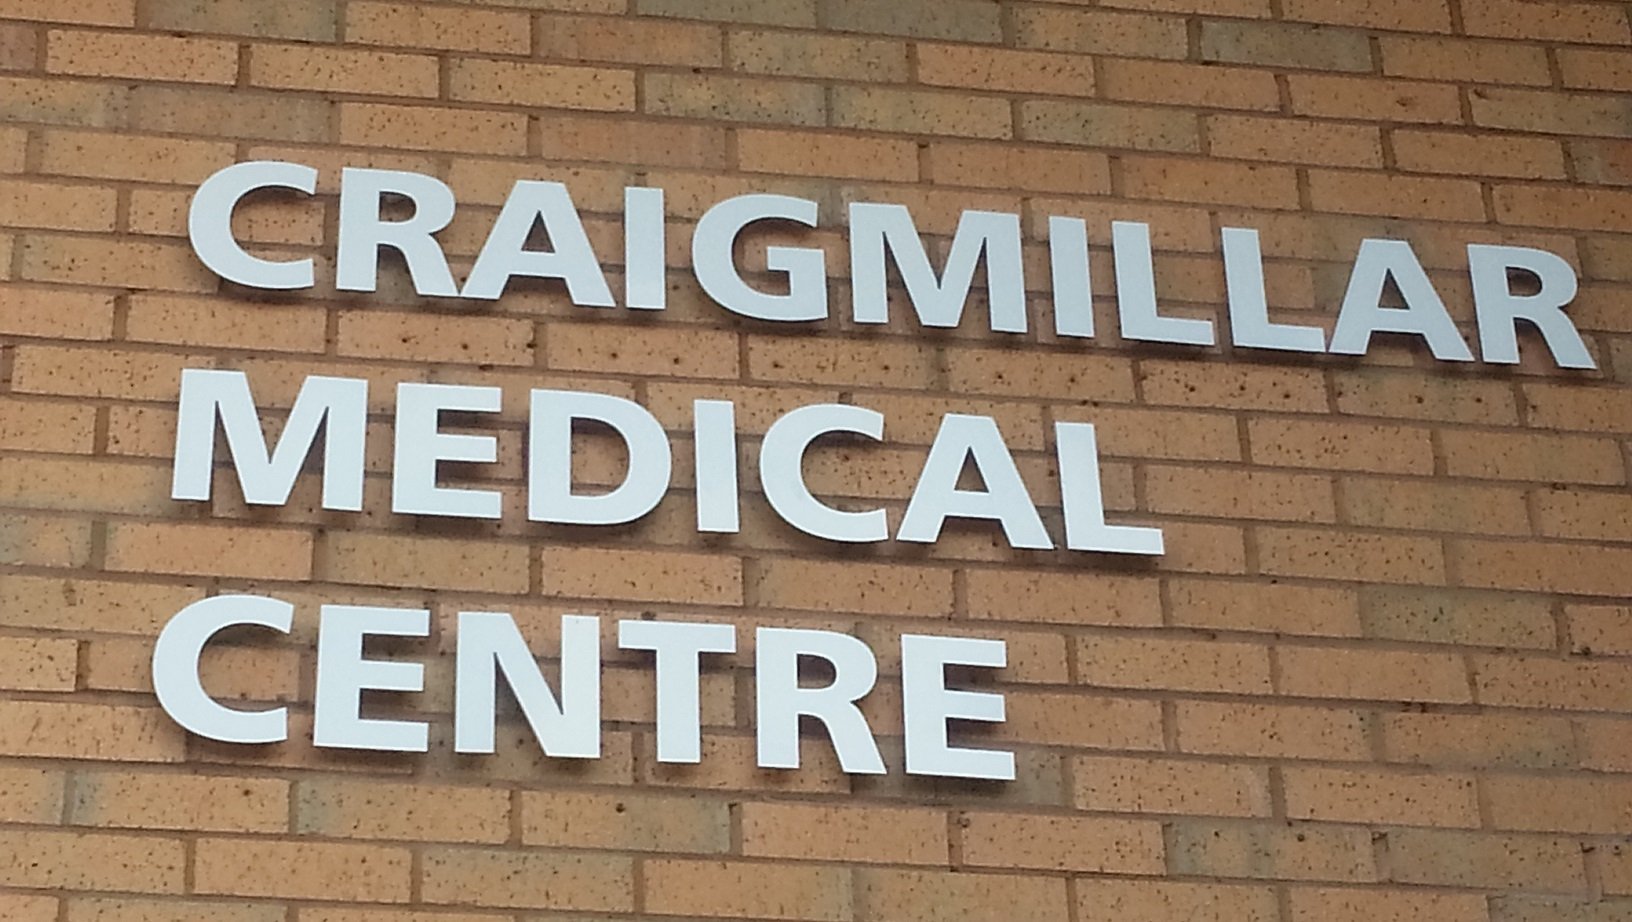 craigmillar medical centre smaller.jpg